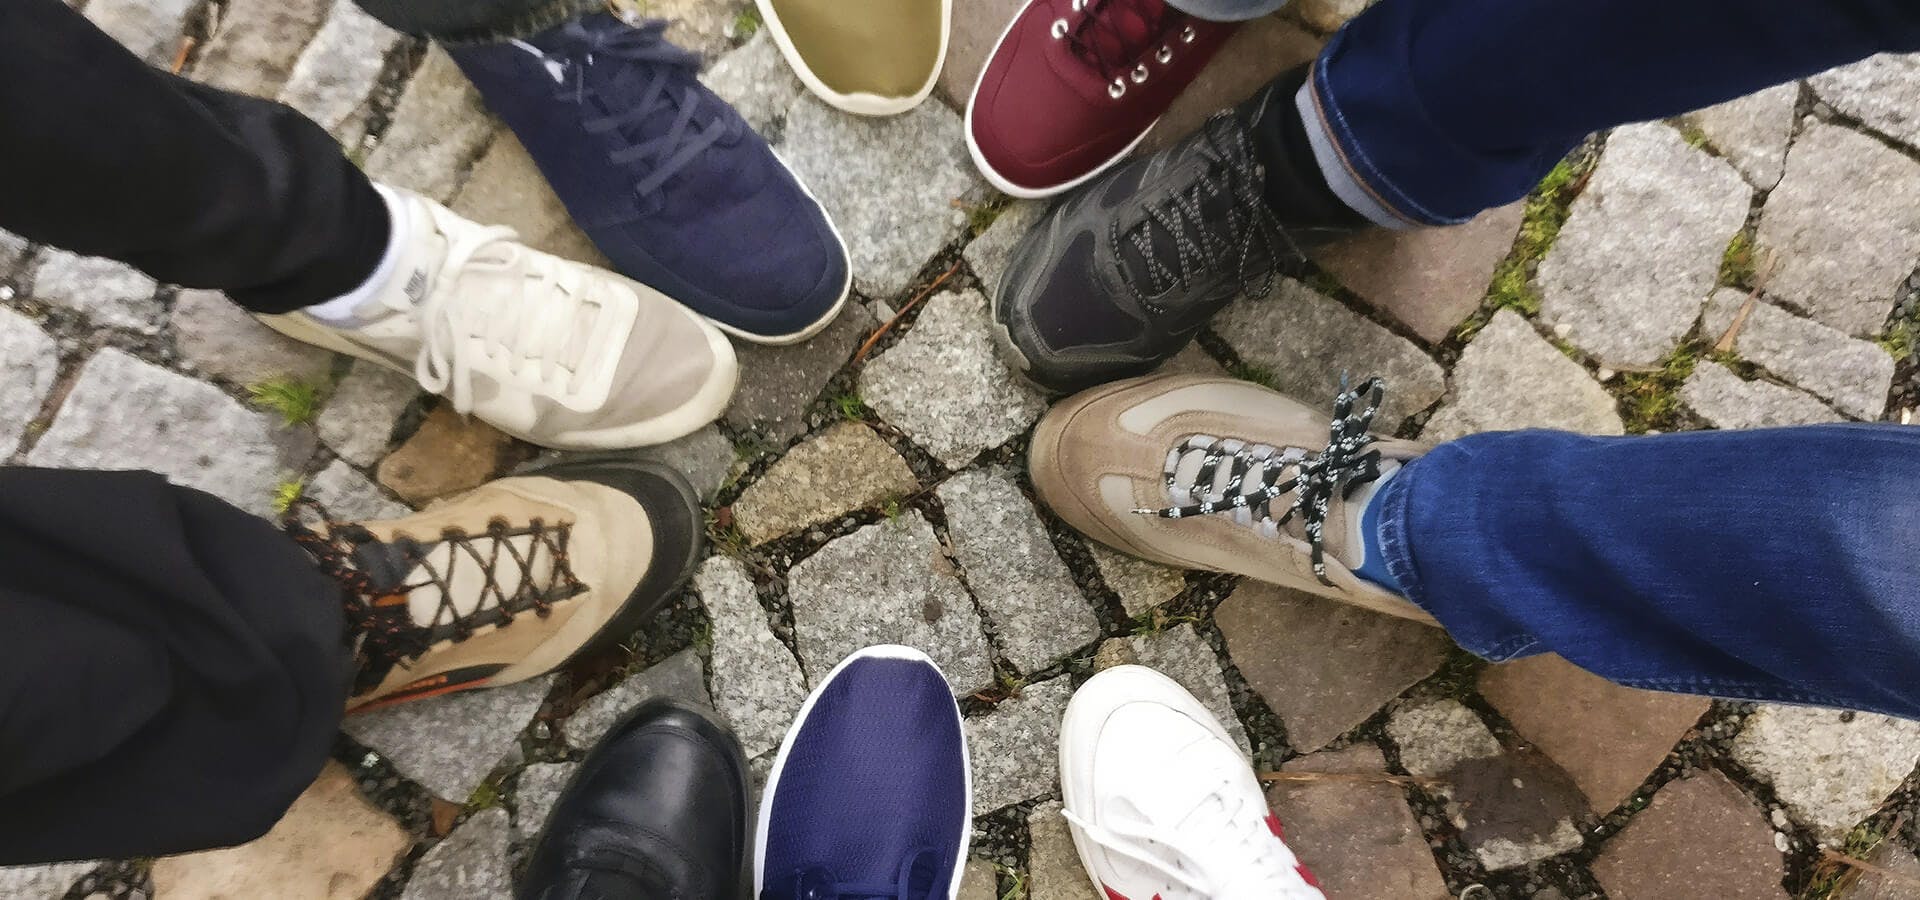 Grupo de amigos juntando su calzado en el suelo